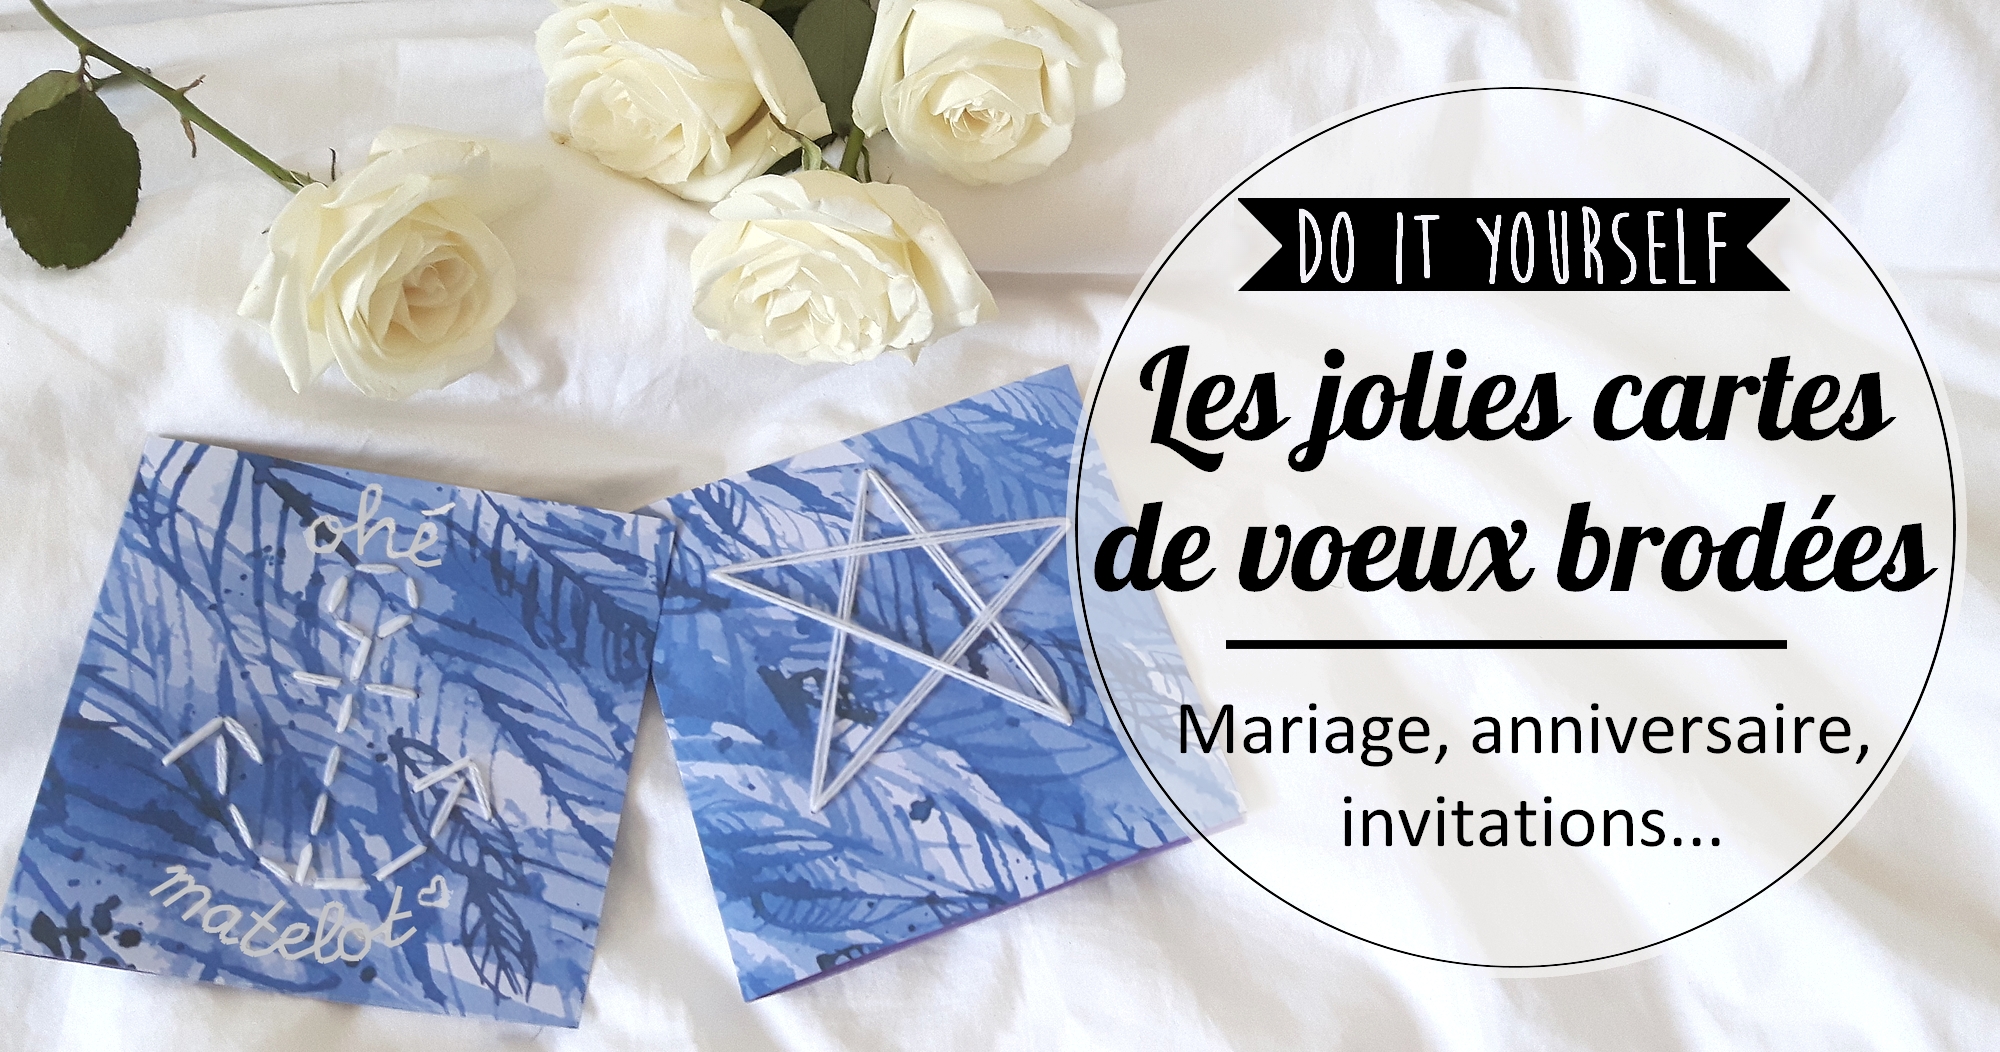 DIY : Les cartes de vœux brodées (mariage, anniversaire, invitation…)